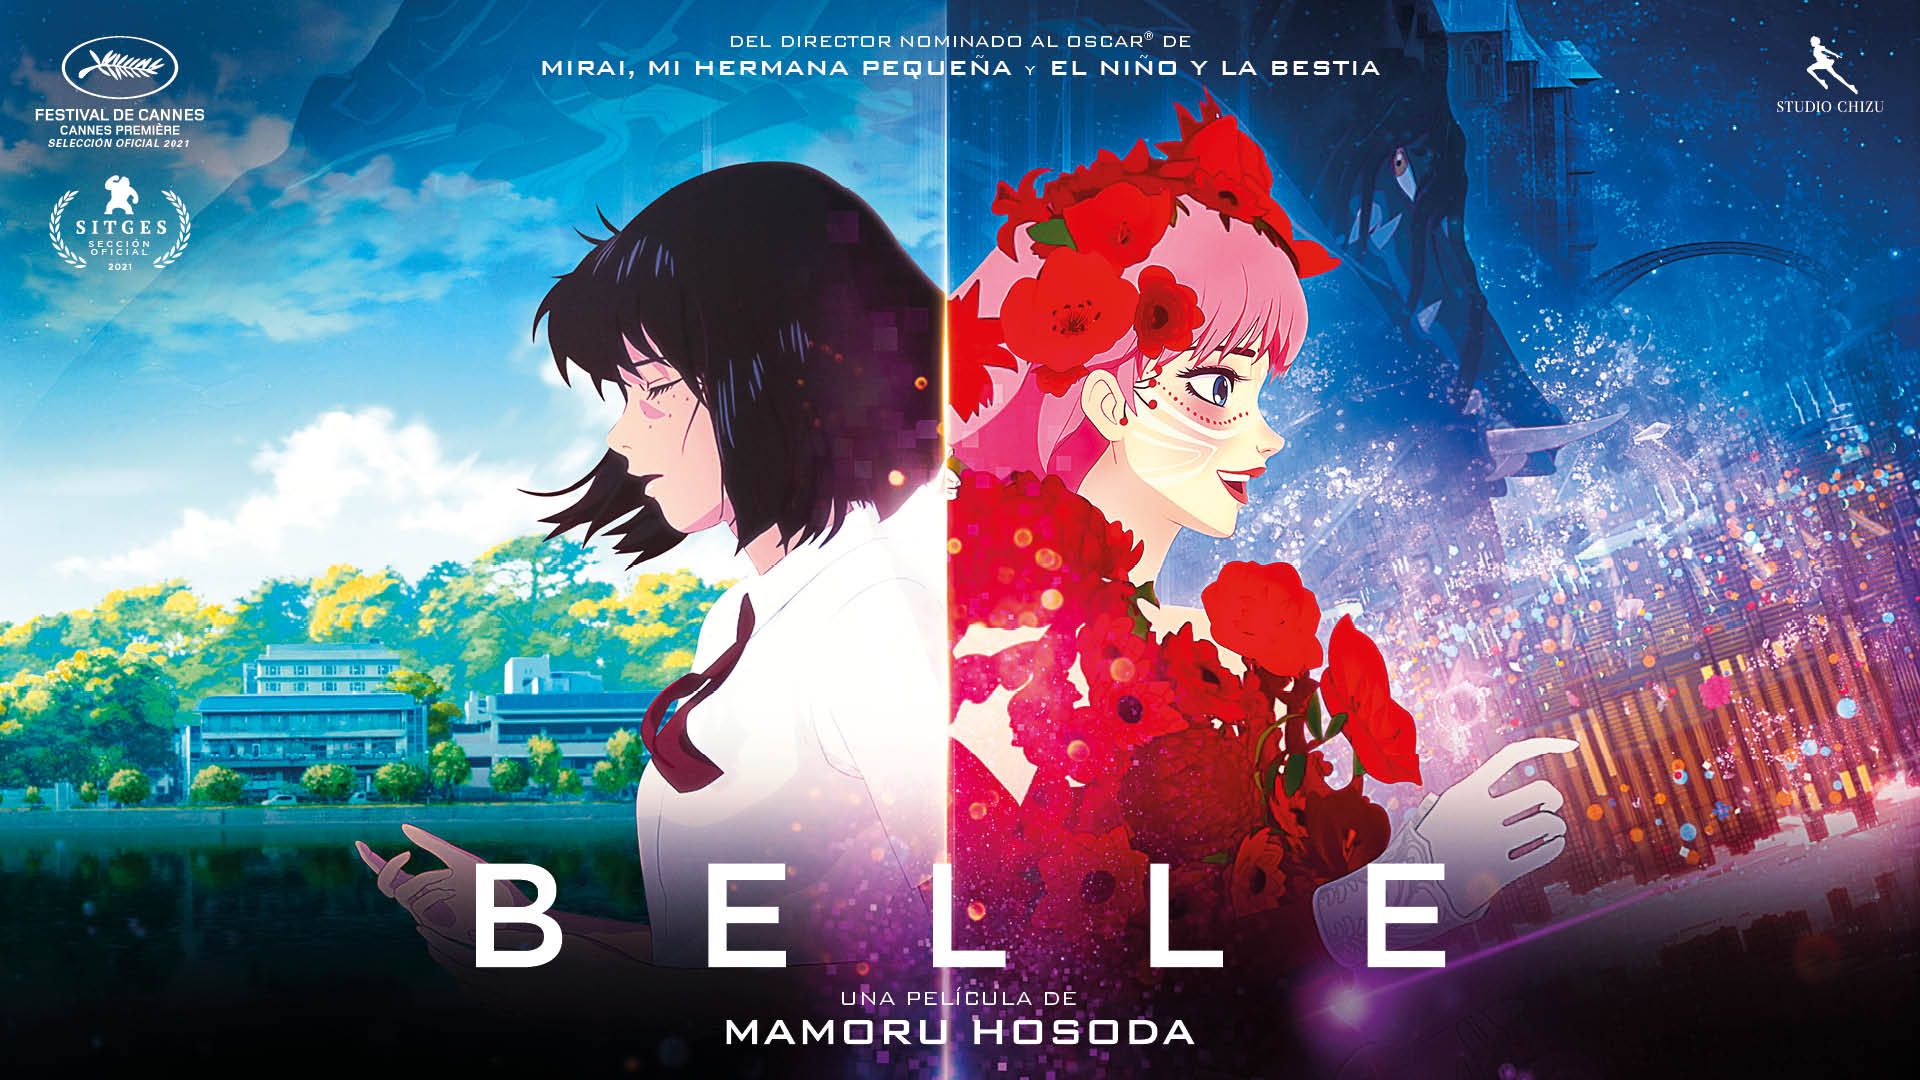 Mamoru Hosoda - IMDb